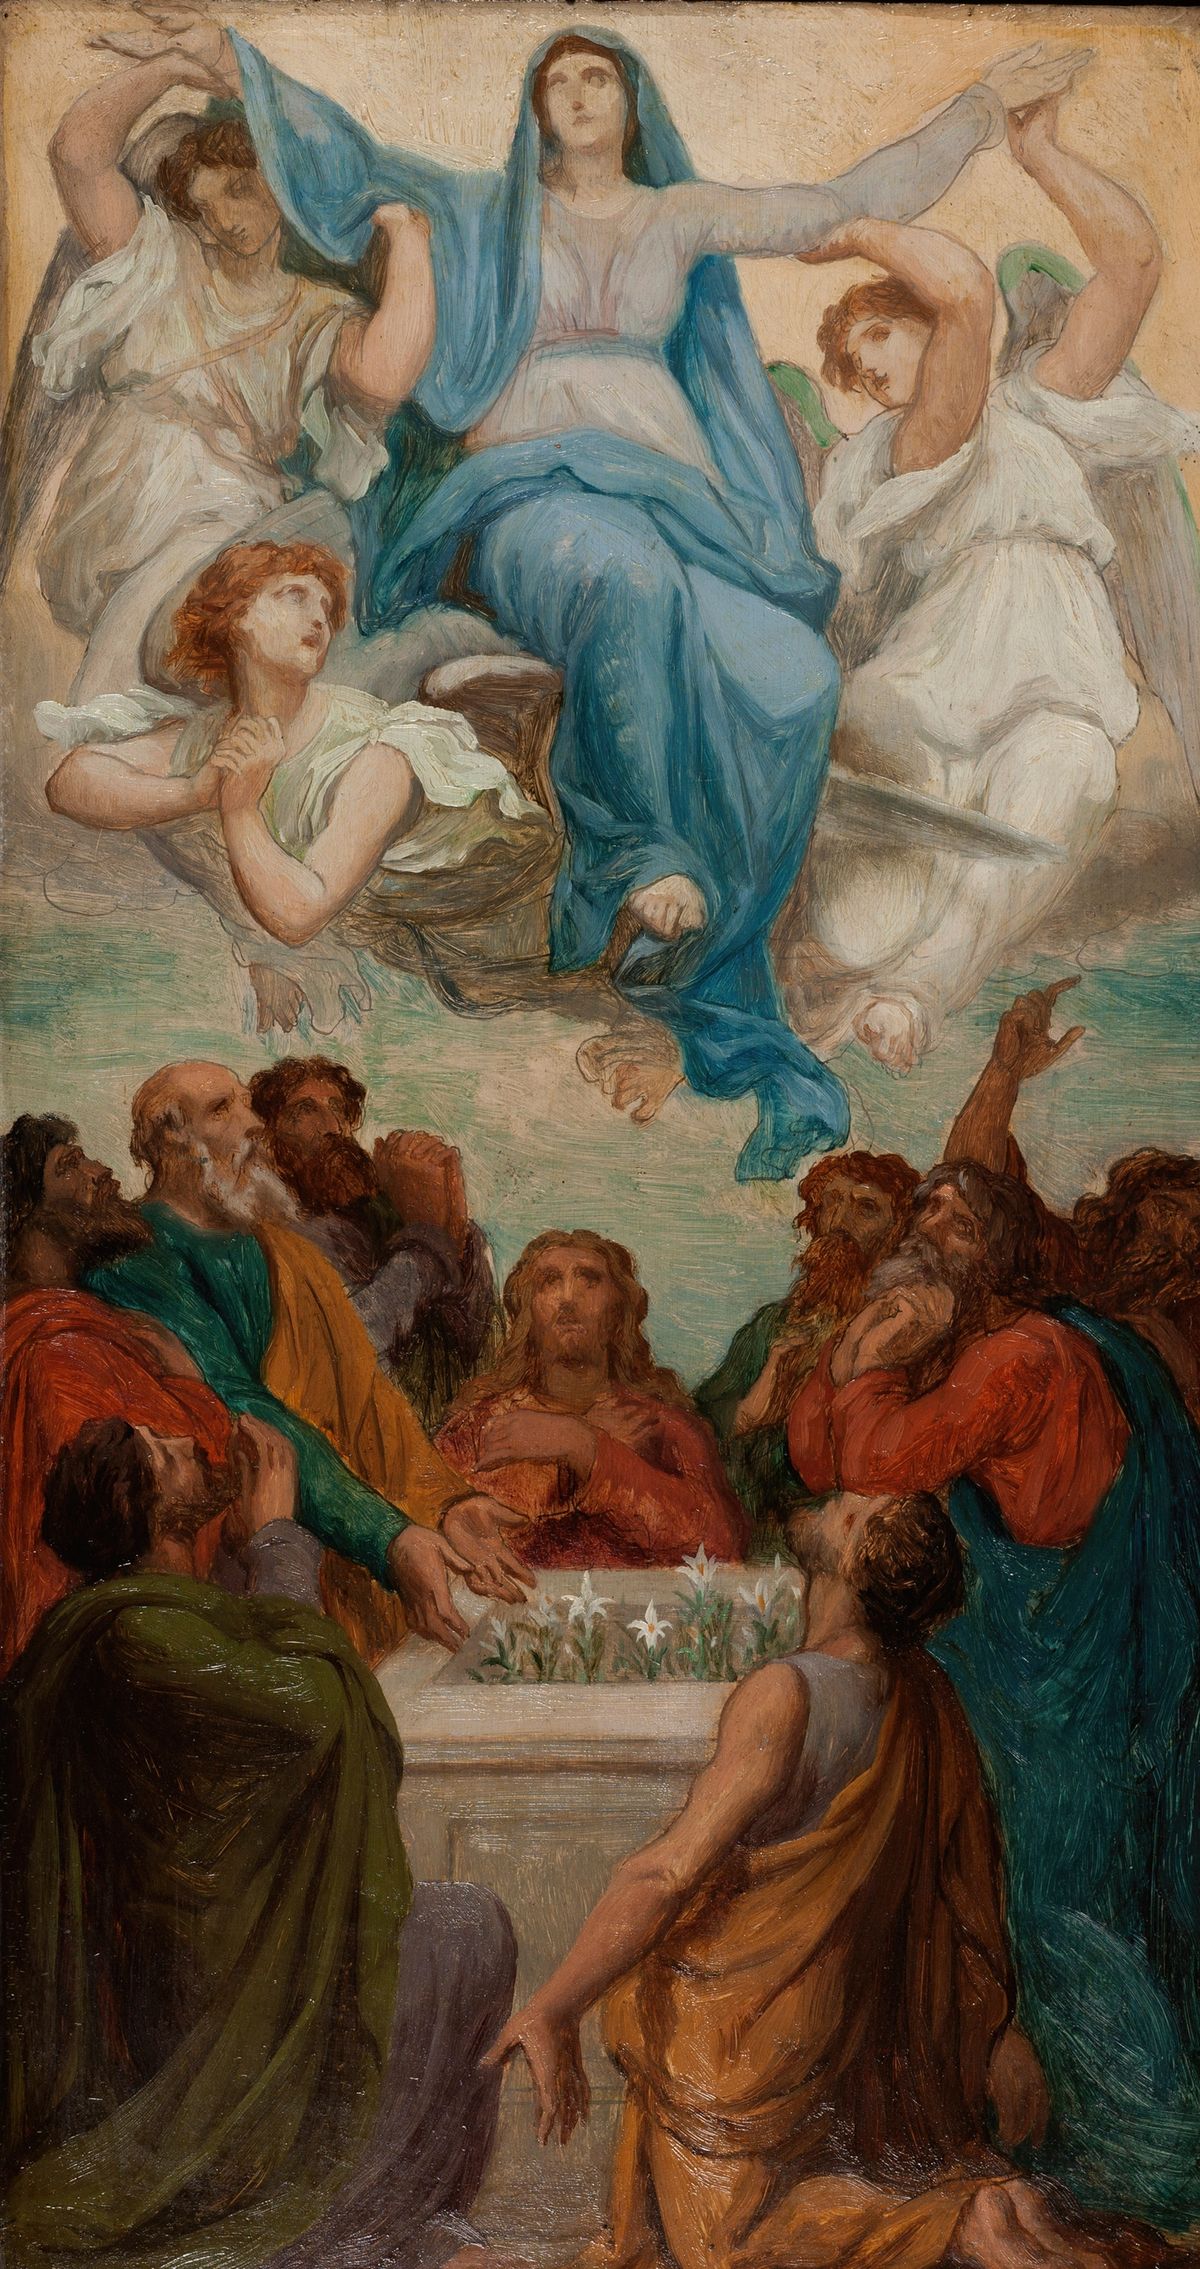 L'Assomption de la Vierge / Assumption of the Virgin (1869) by Emile Bin - Public Domain Catholic Painting